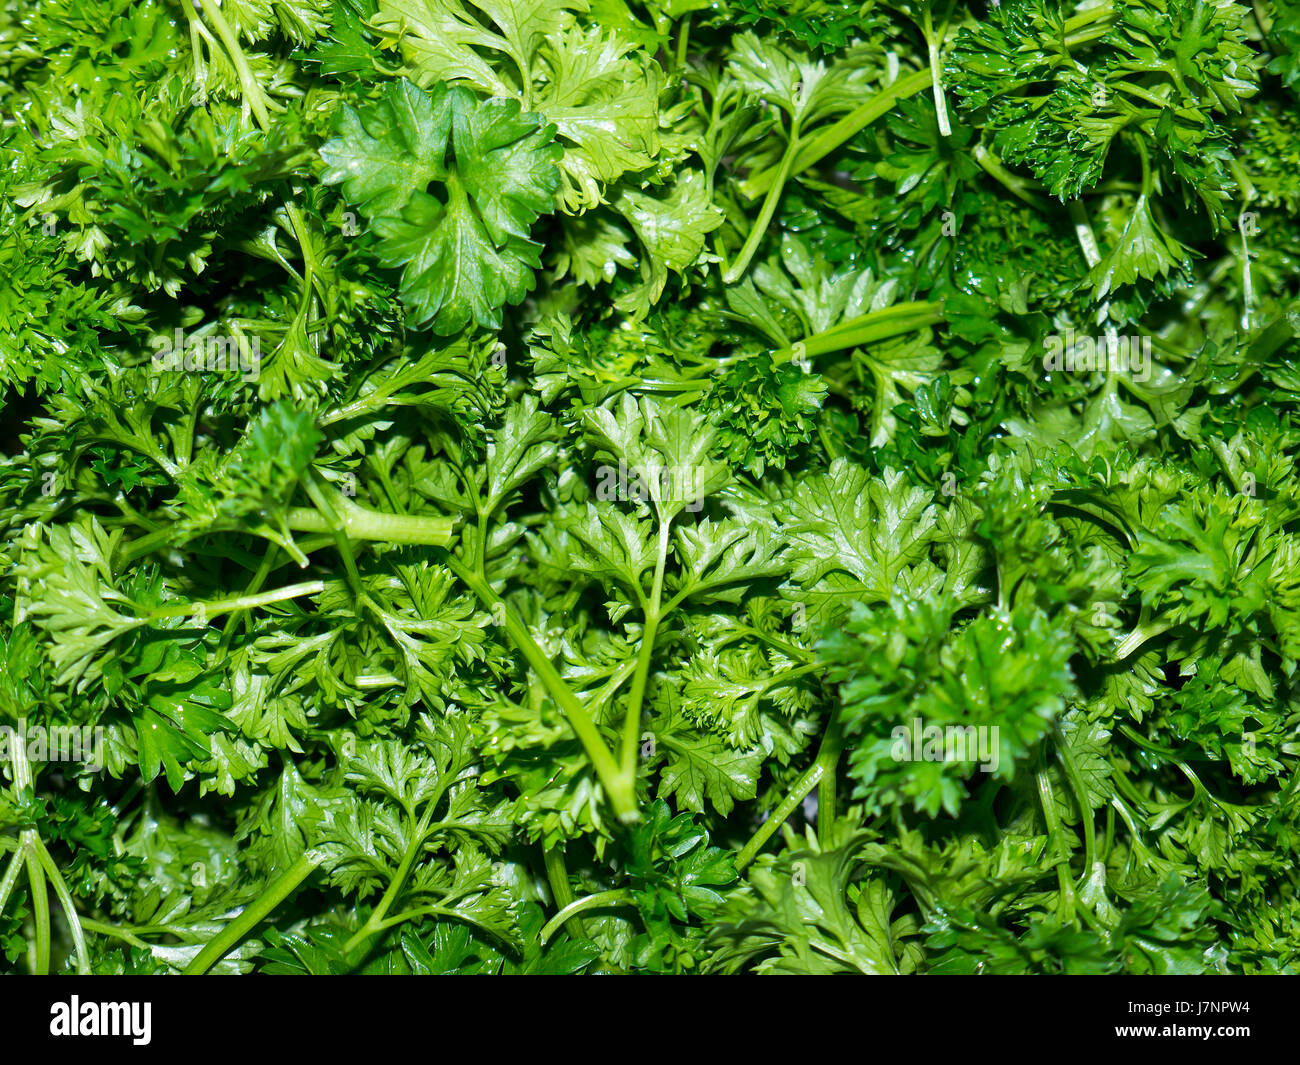 Prezzemolo o giardino prezzemolo (Petroselinum crispum) è una specie di pianta flowering in famiglia Apiaceae. Foto Stock